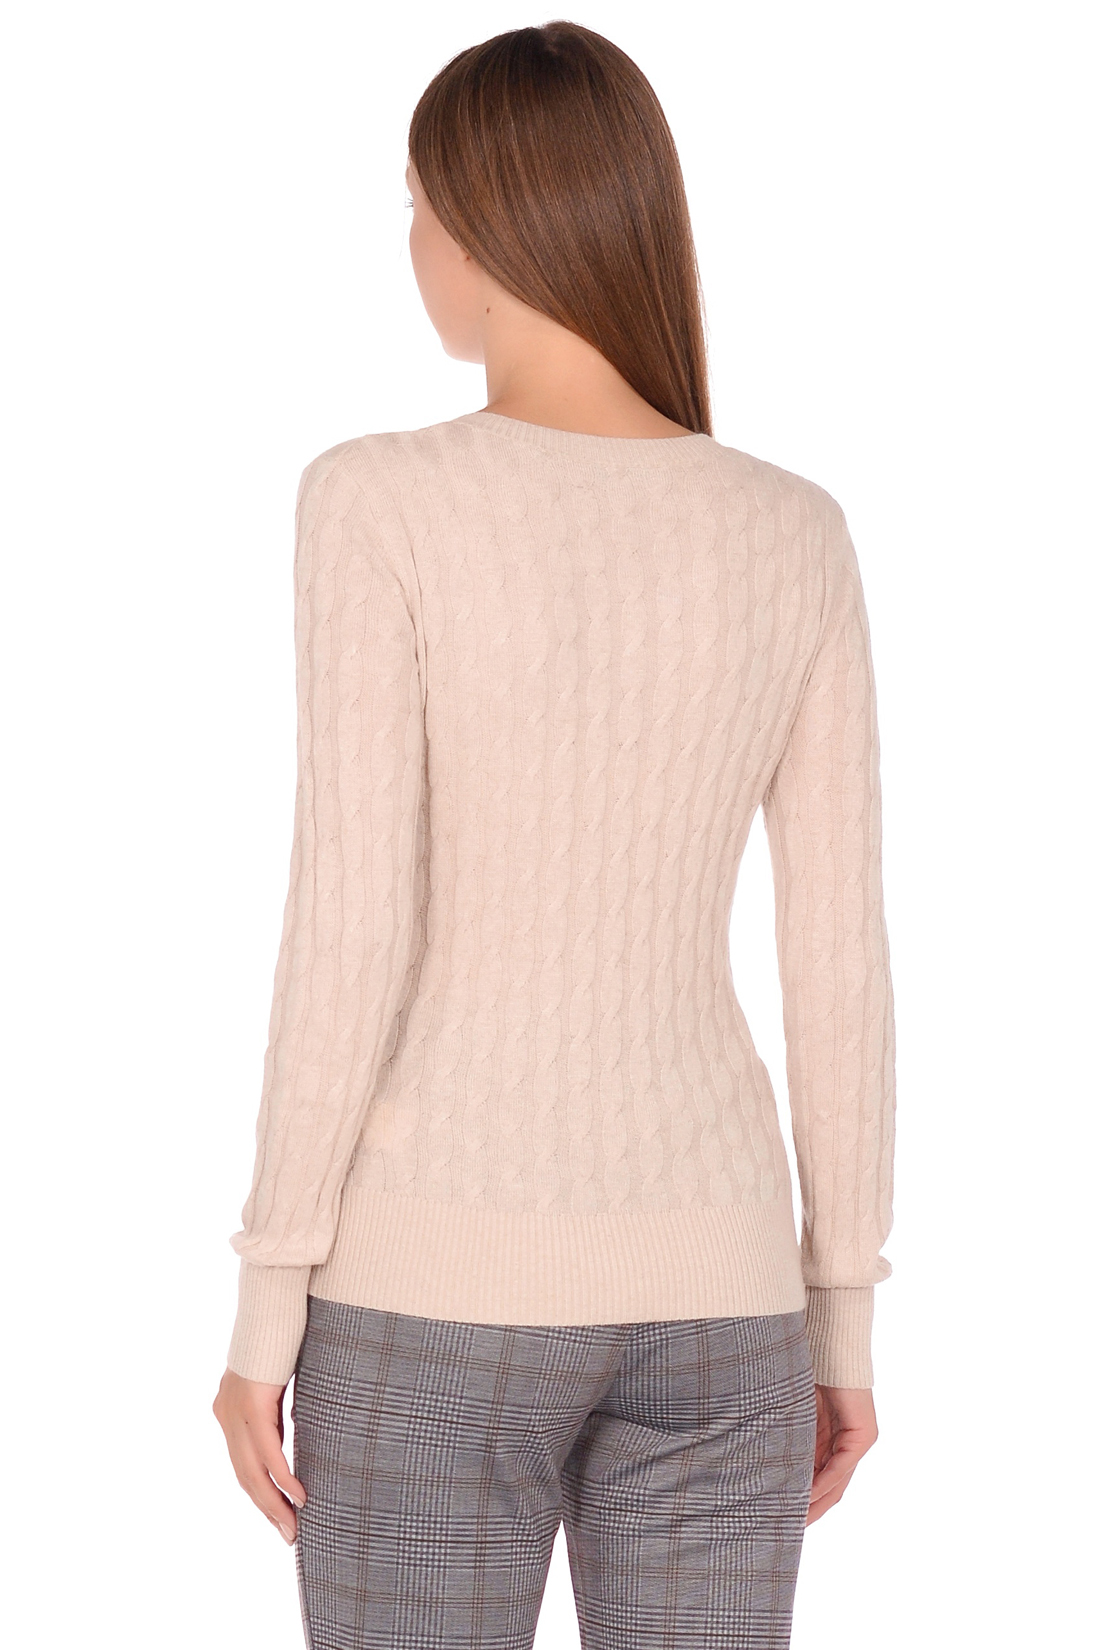 Базовый пуловер с узором и ангорой (арт. baon B138703), размер XXL, цвет серый Базовый пуловер с узором и ангорой (арт. baon B138703) - фото 2